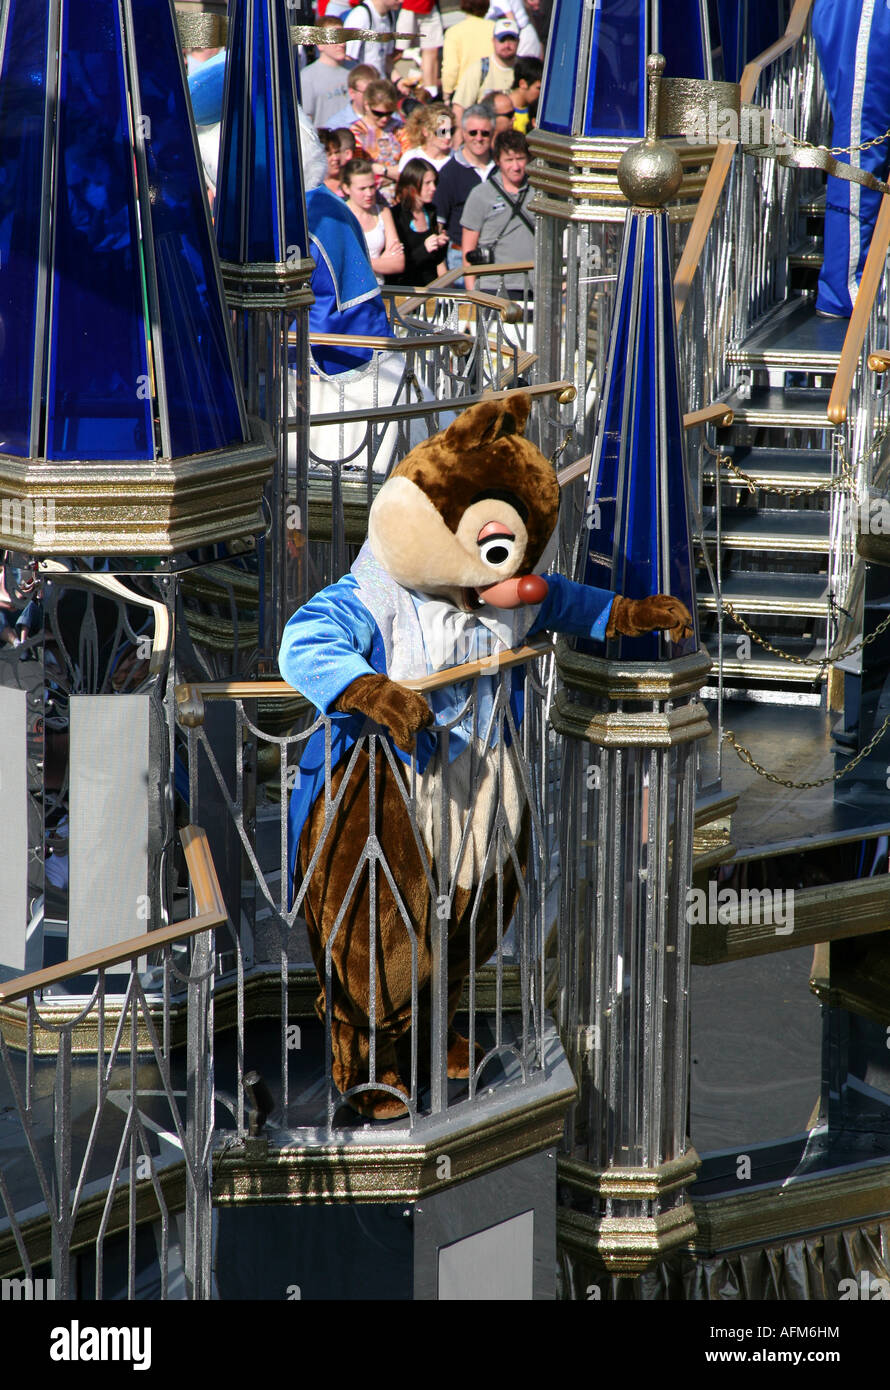 Disney characters on a Magic Kingdom afternoon parade at Orlando Florida Stock Photo